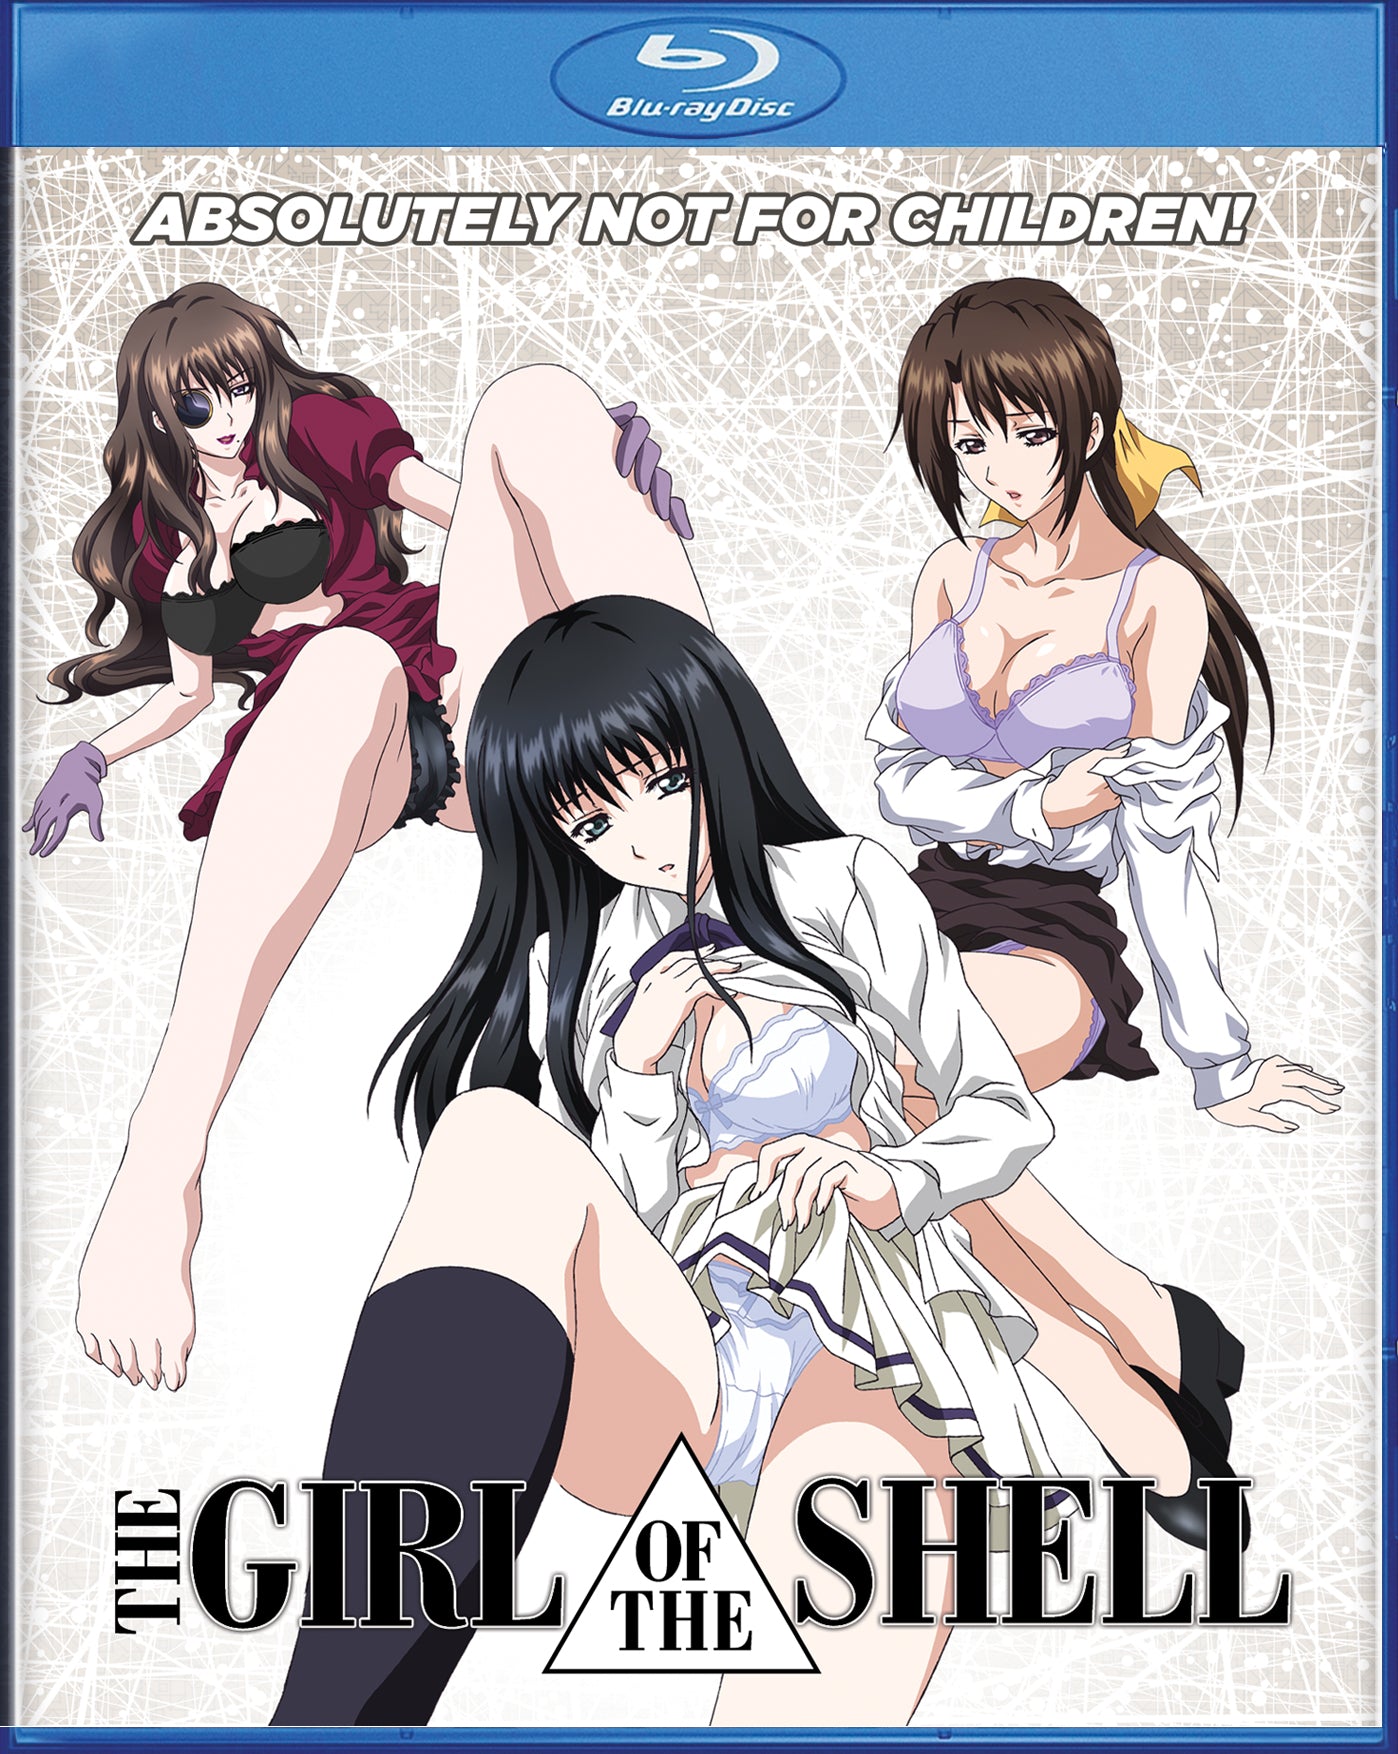 THE GIRL IN THE SHELL (Kara no Shoujo) [BD]